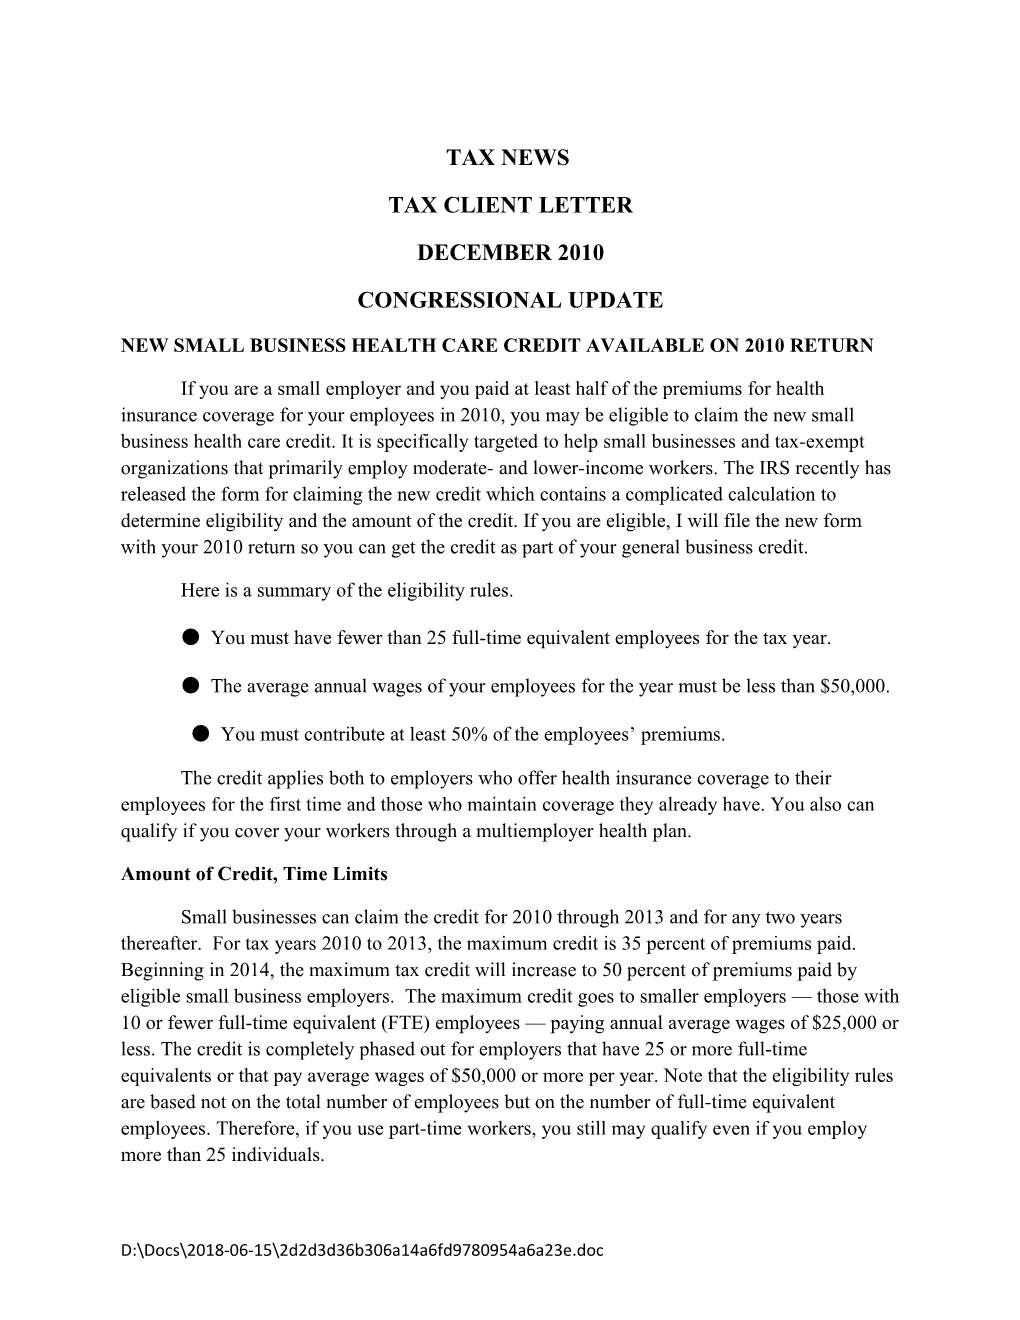 Tax Client Letter